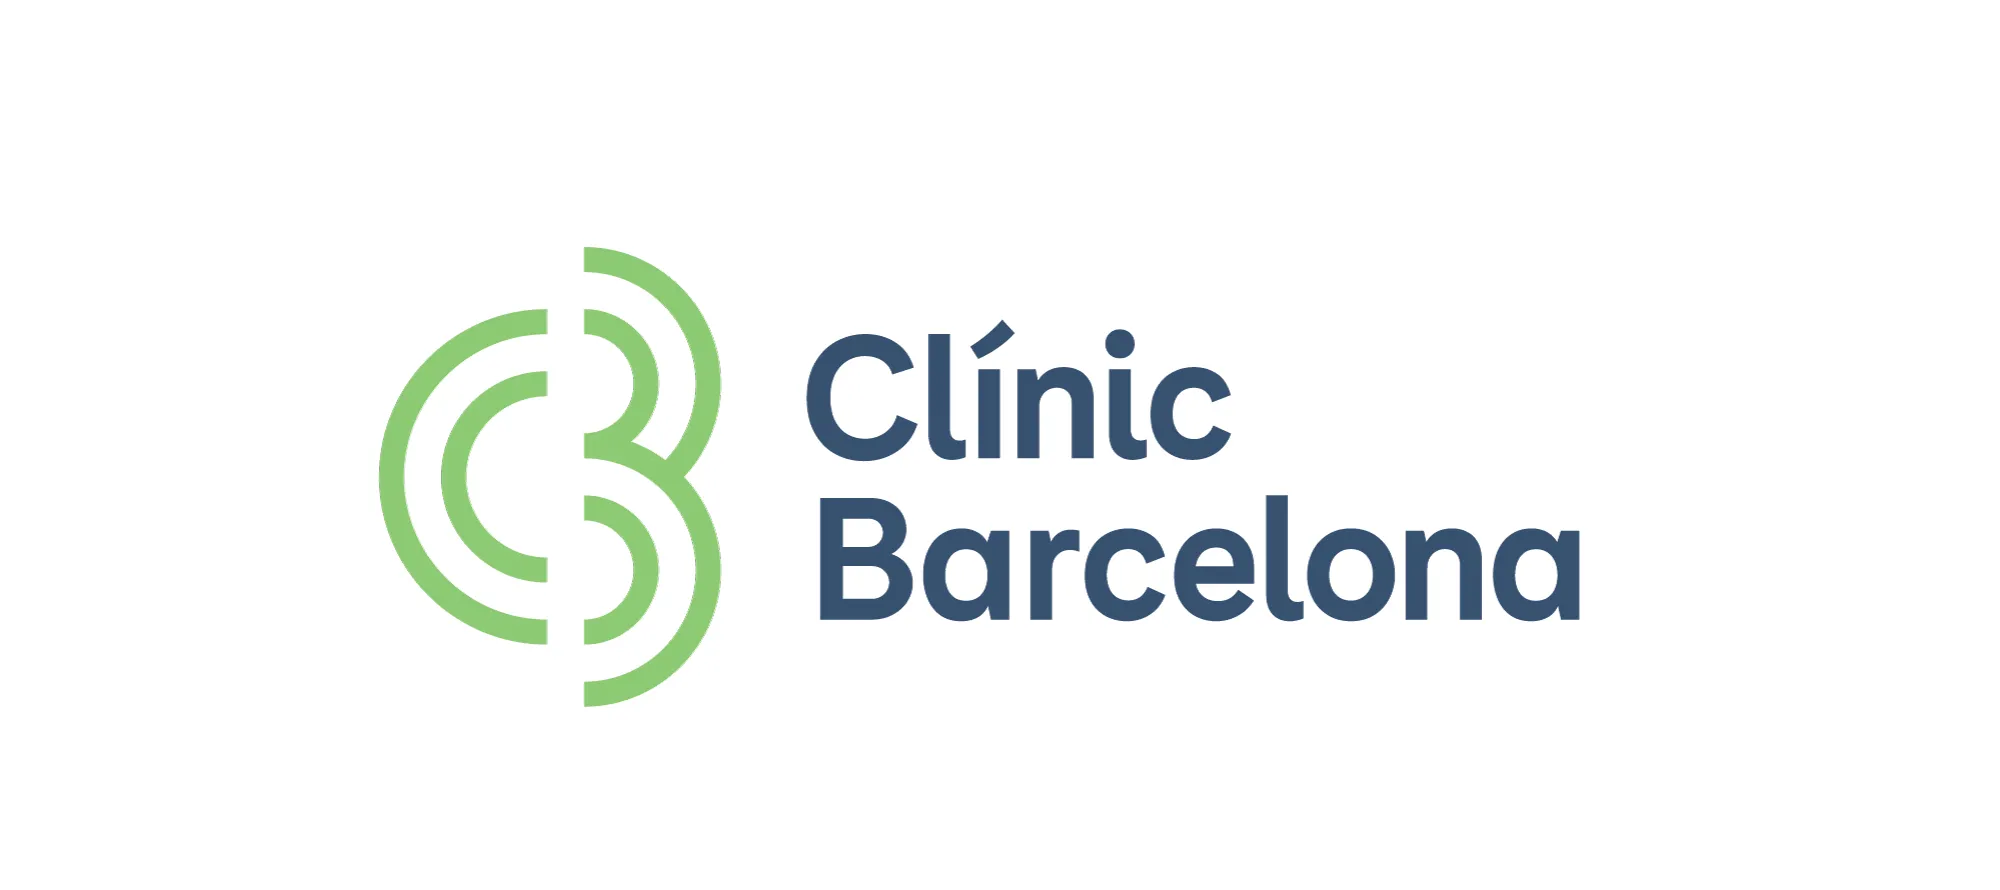 41. Hospital Clínic Barcelona